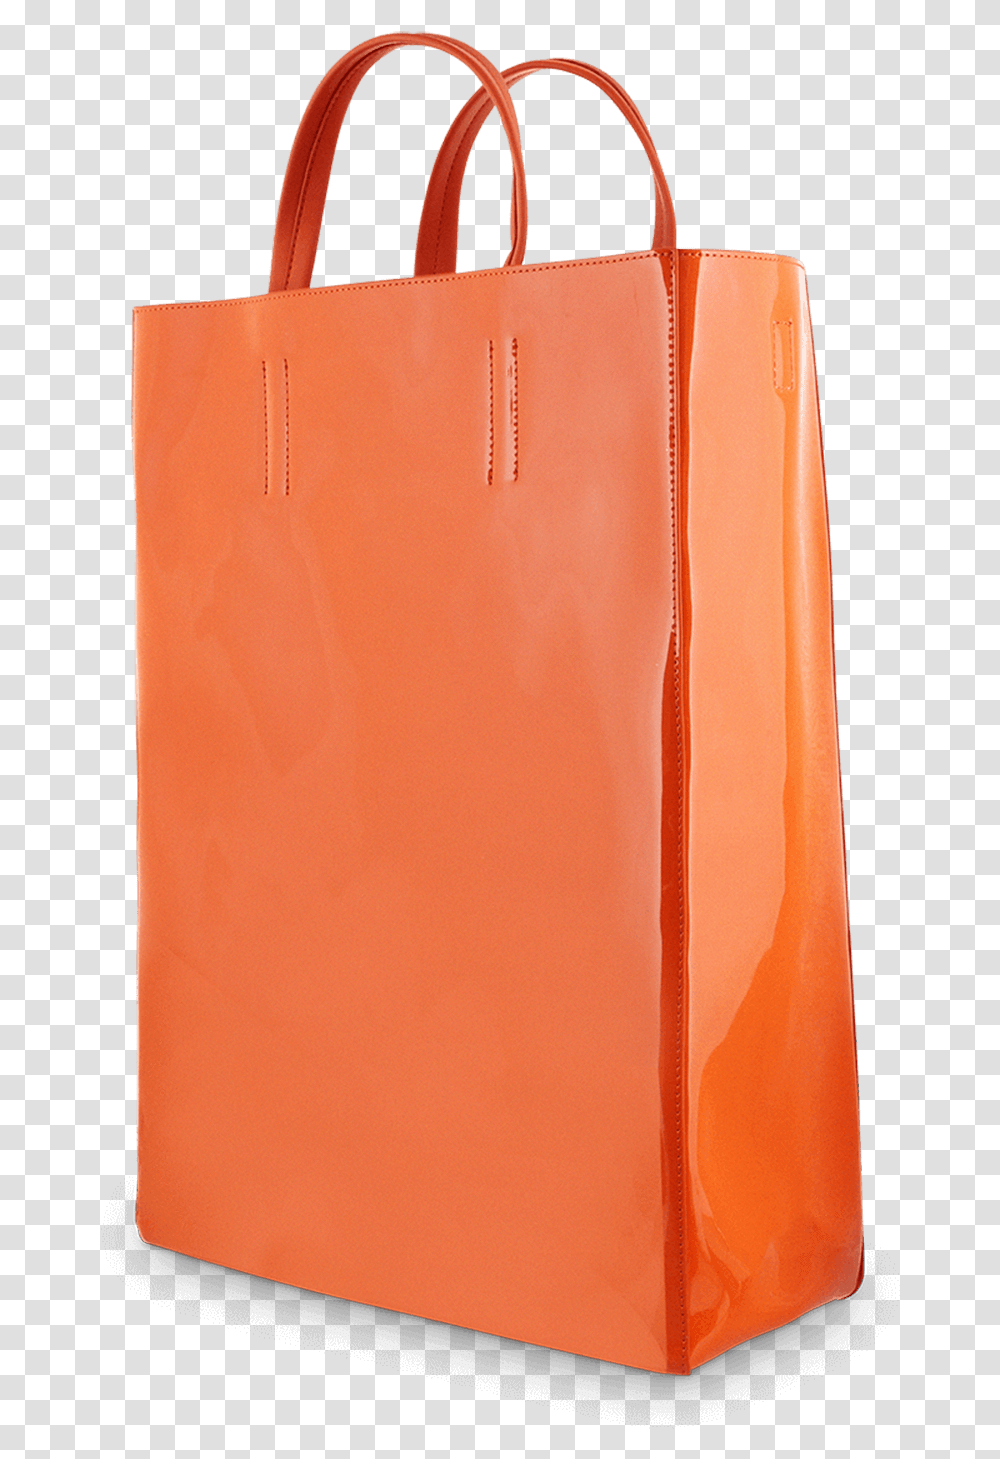 Bonnie Burnt Orange Patent Side Tote Bag, Shopping Bag, Apparel, Handbag Transparent Png